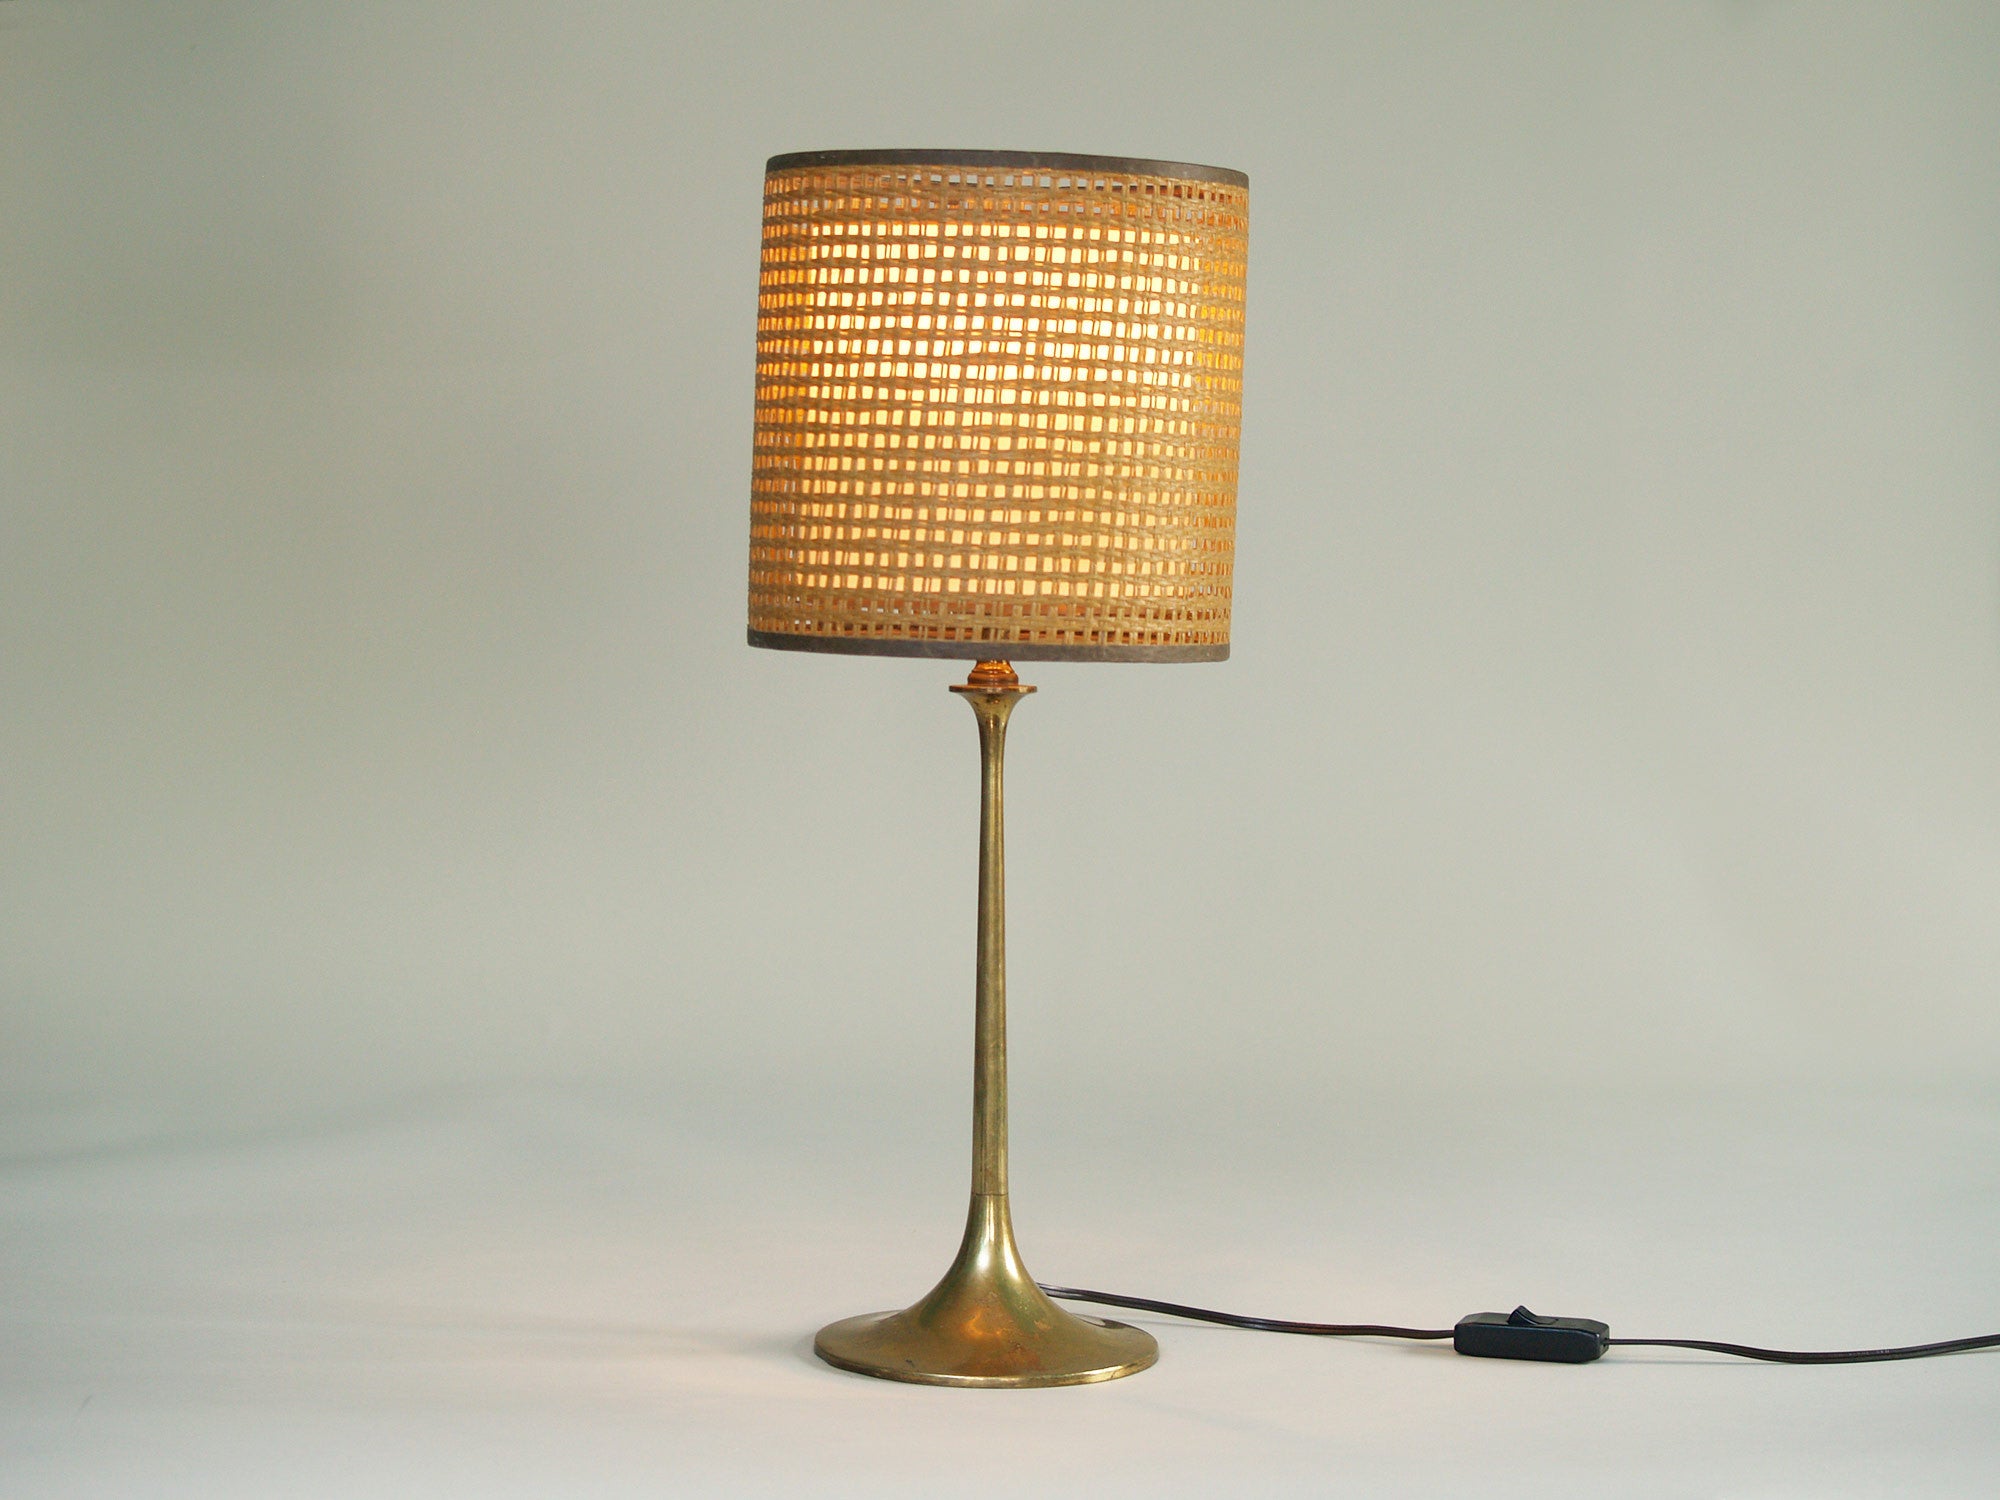 Lampe Grâce suédoise, Suède (vers 1940)..Swedish Grace Table lamp, Sweden (circa 1940)